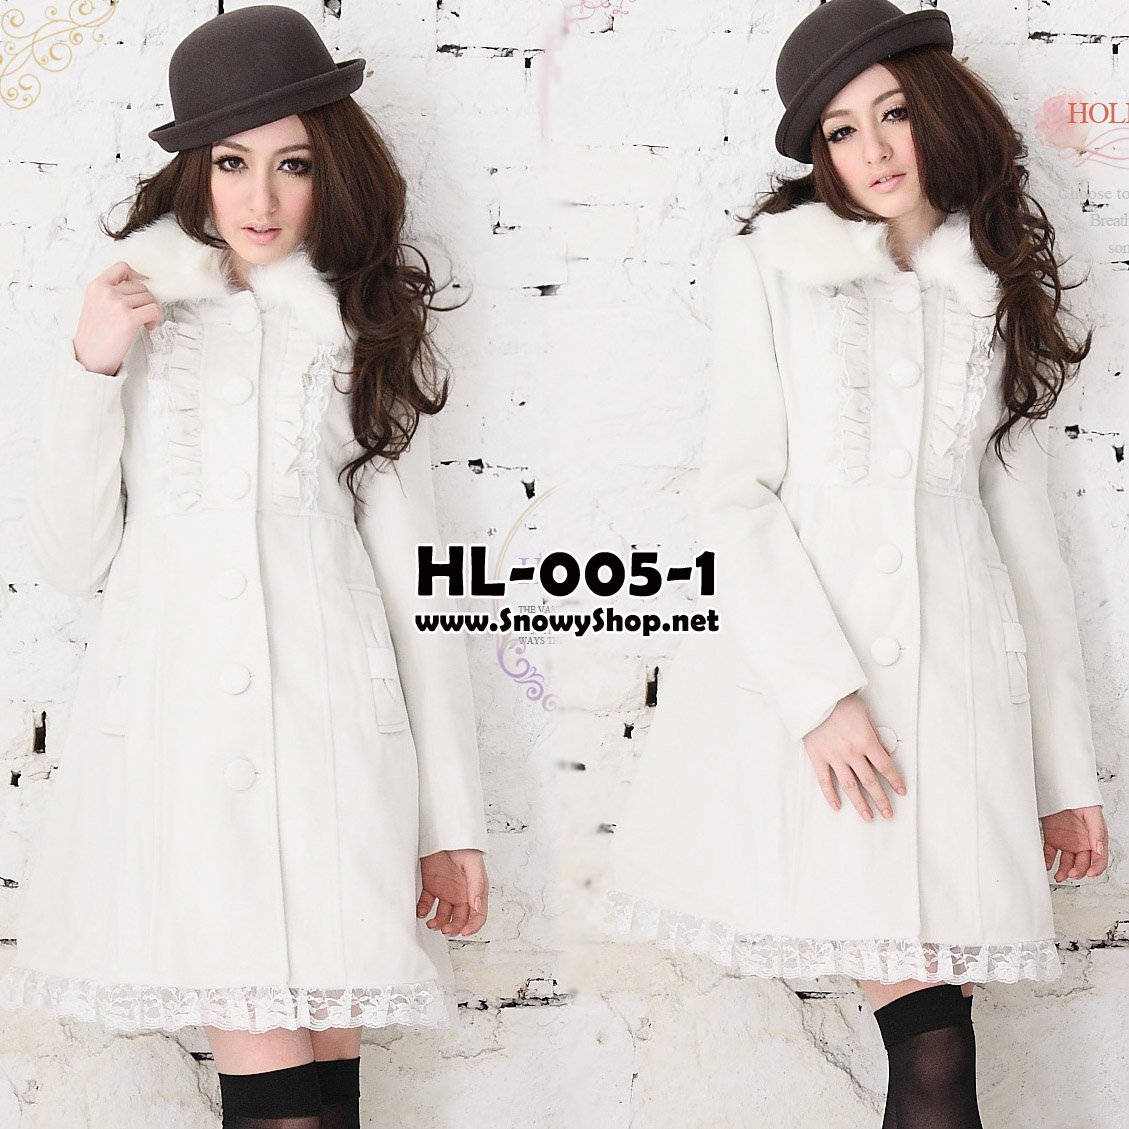 [[*พร้อมส่ง S]] [coat] [HL-005-1] Holiday lady เสื้อโค้ทกันหนาวสีขาวผ้าวูลหนา ปกคอขนเฟอร์ถอดออกได้ ปลายกระโปงต่อผ้าลูกไม้น่ารัก